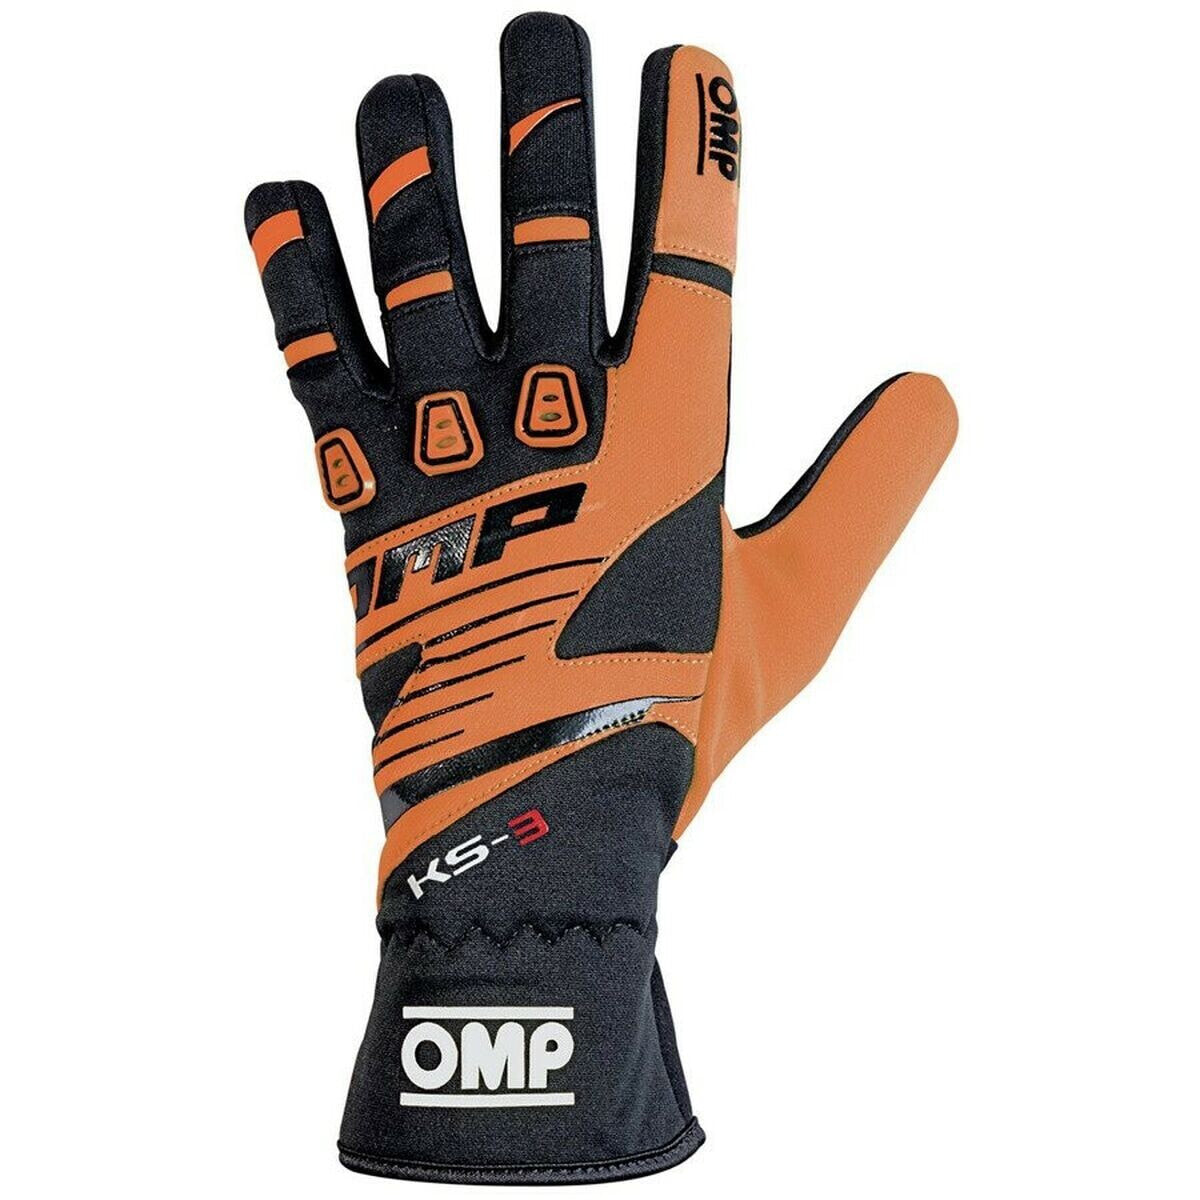 Karting Gloves OMP KS-3 S Black Orange